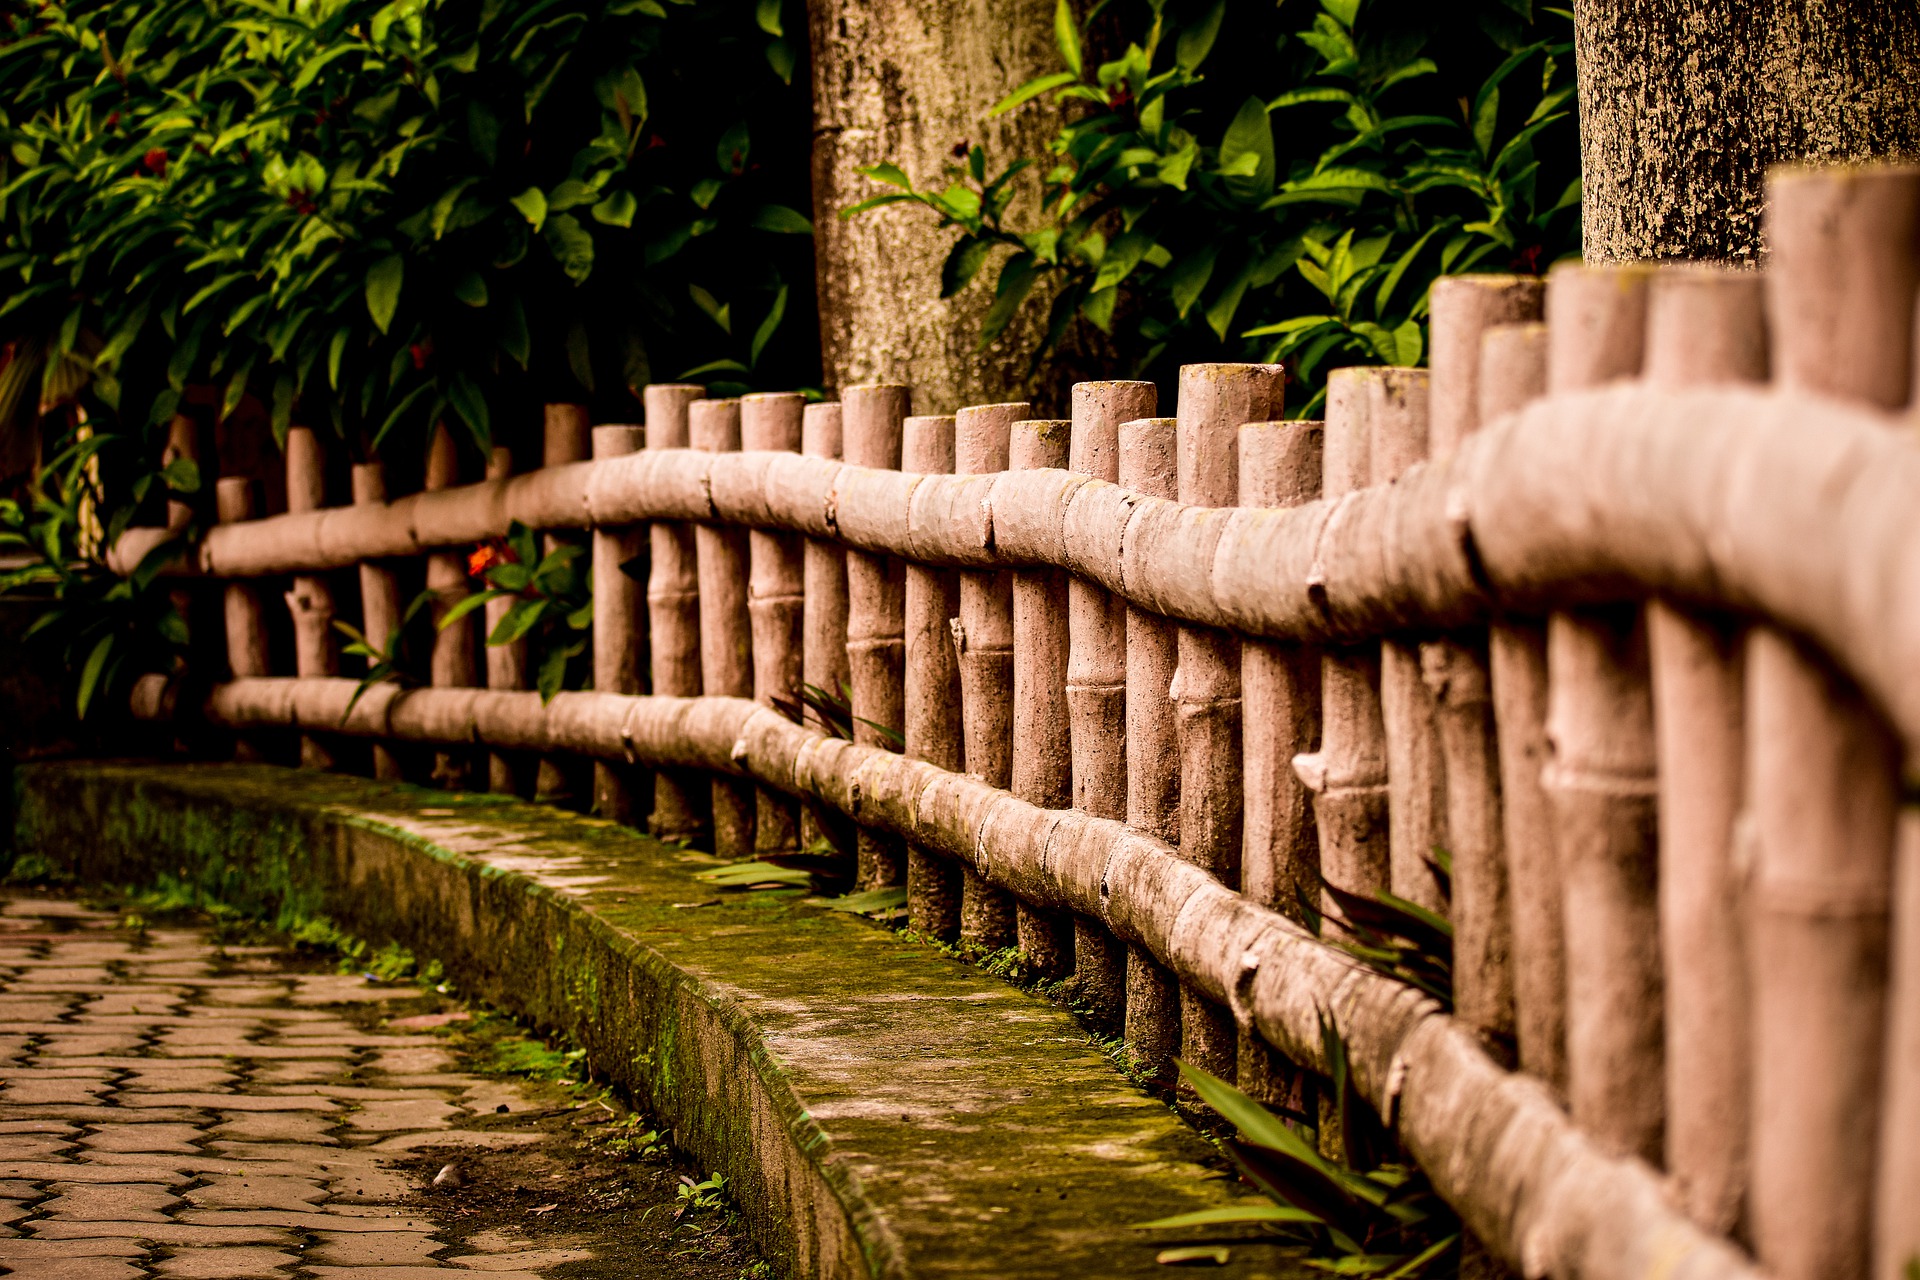 Caña Bambú Marrón